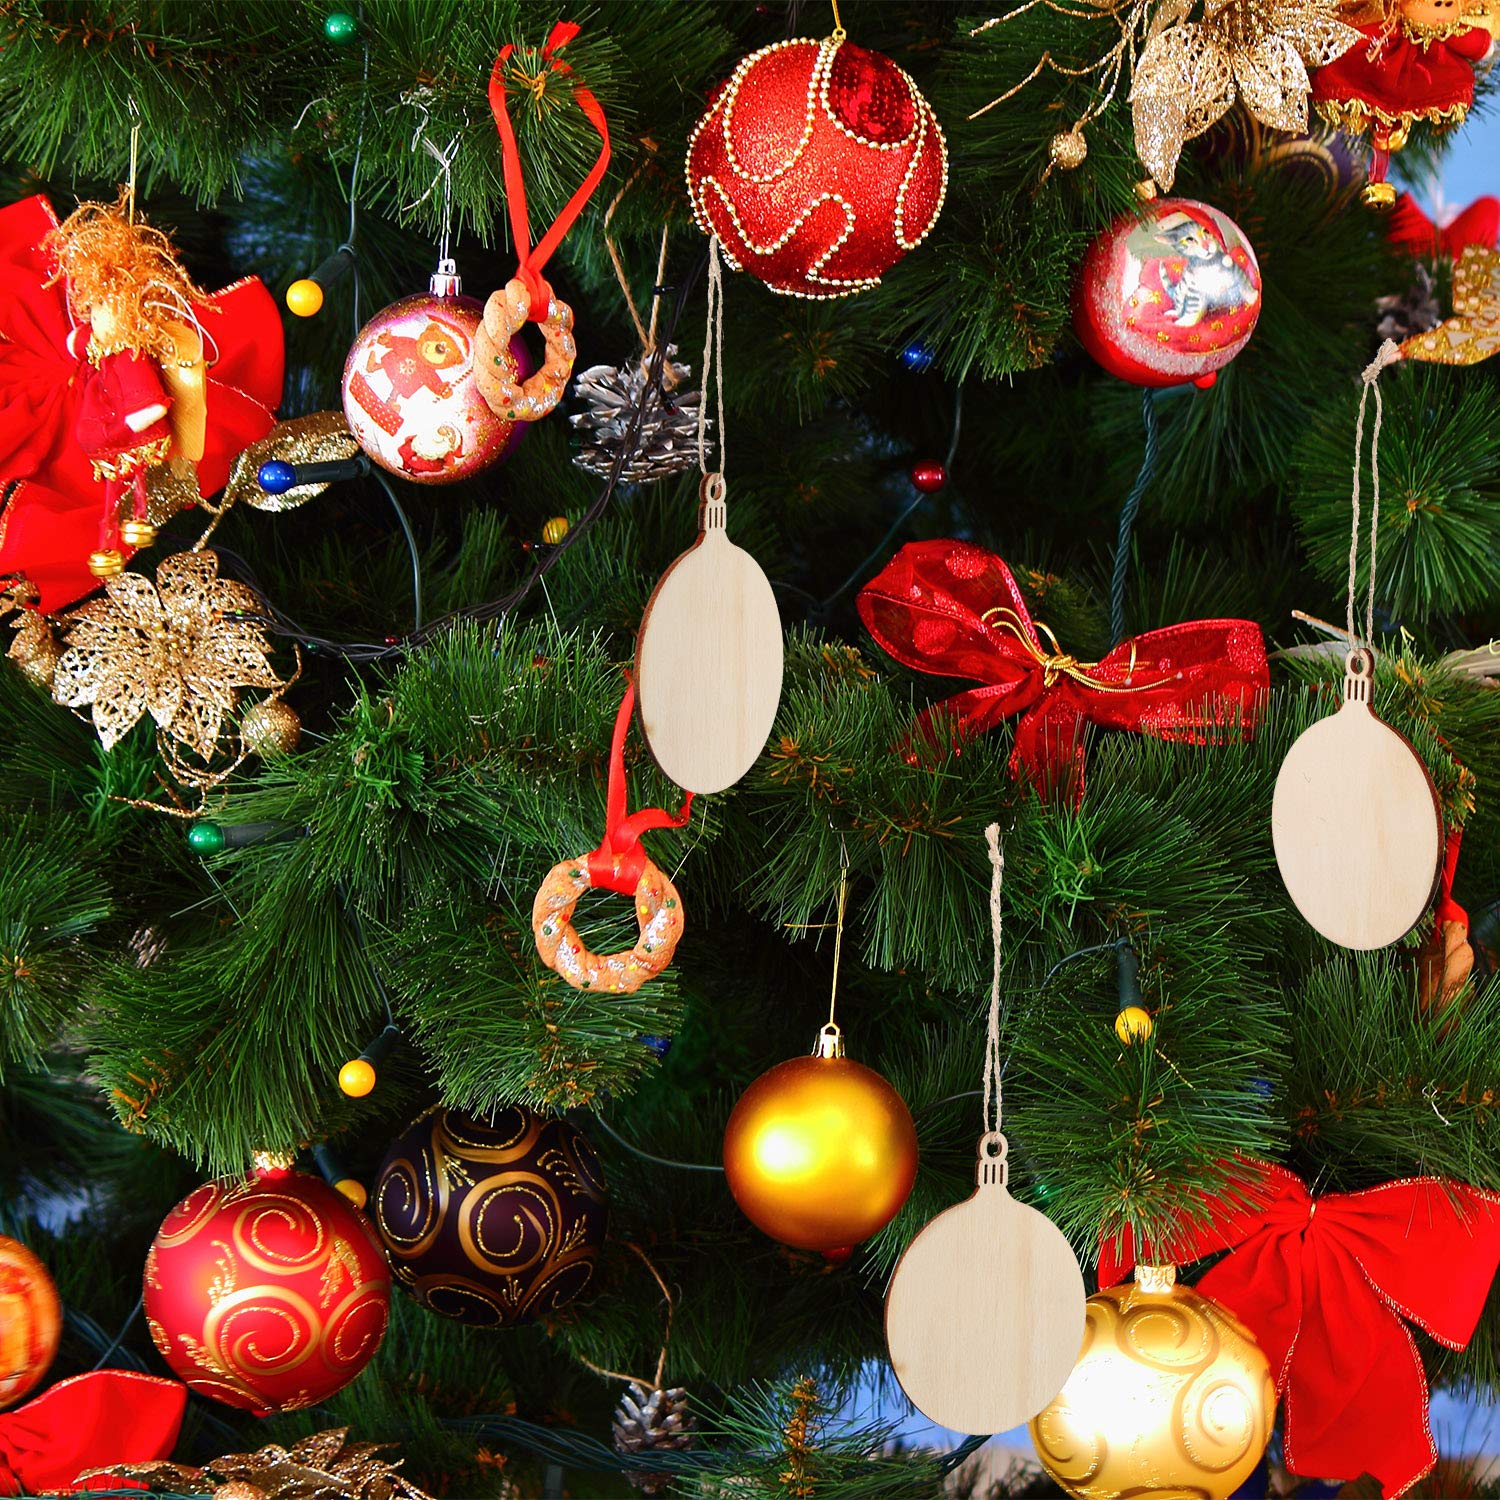 Decorazioni Natalizie On Line.Palline Di Natale Non C E Albero Di Natale Senza Palline Scegli Le Piu Belle